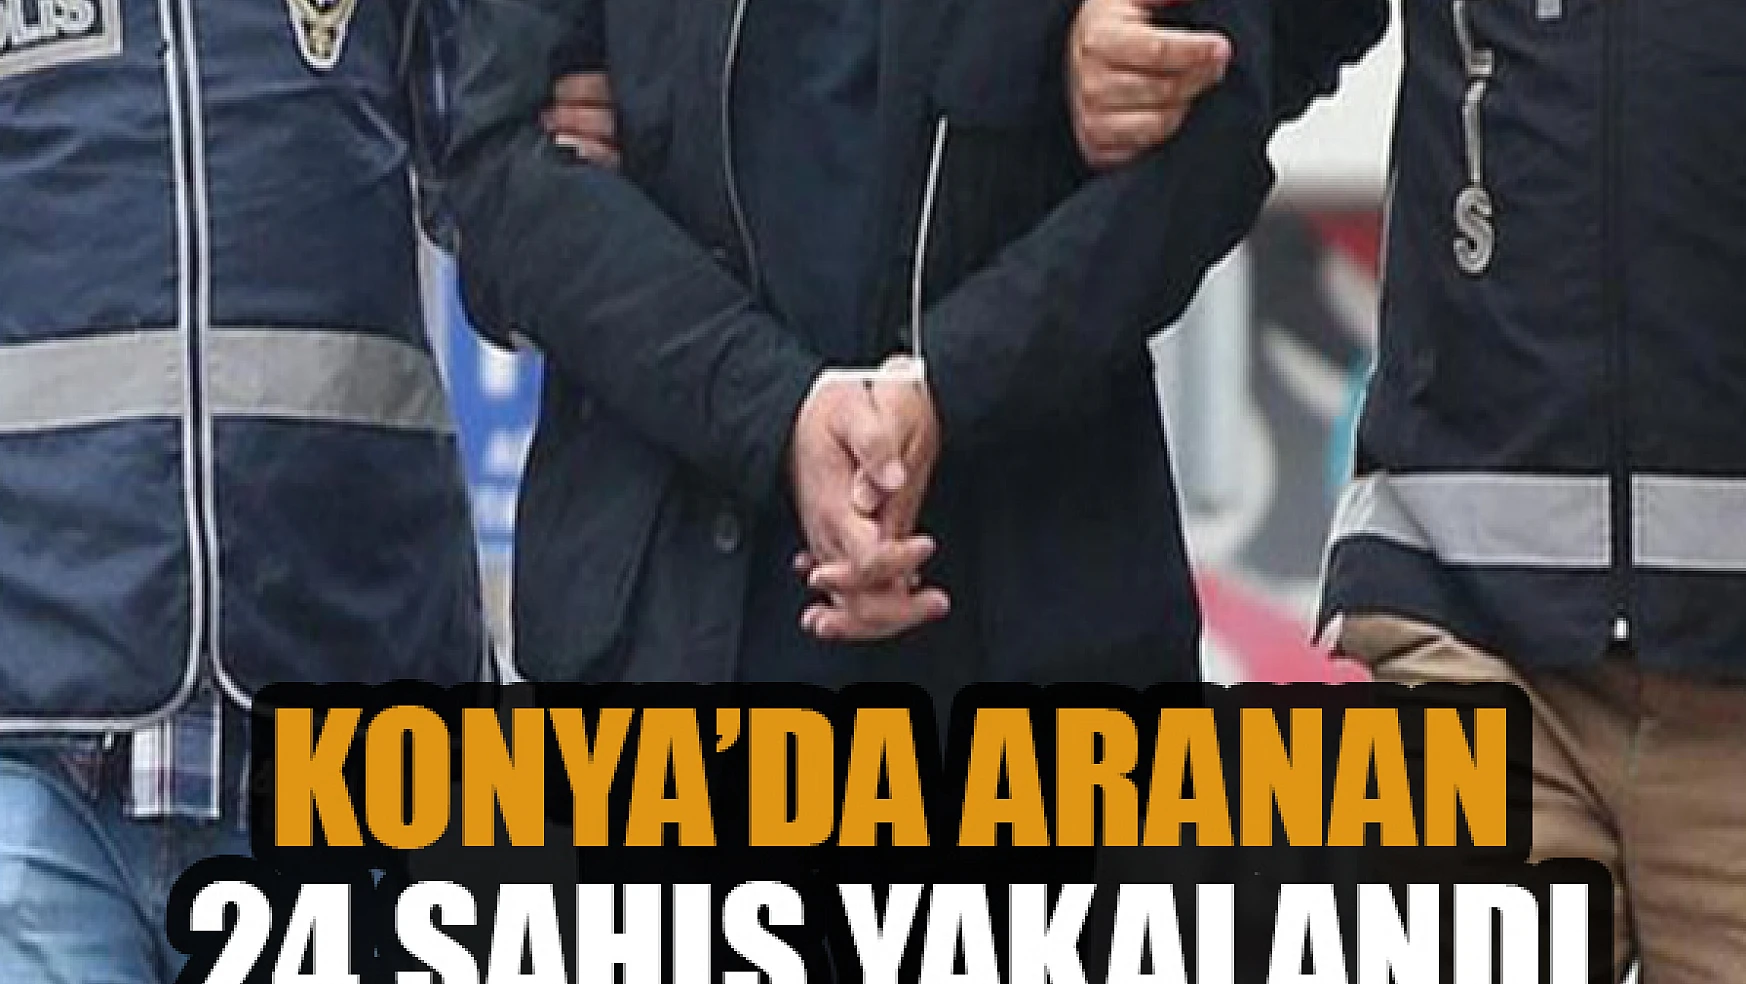 Konya'da aranan 24 şahıs yakalandı